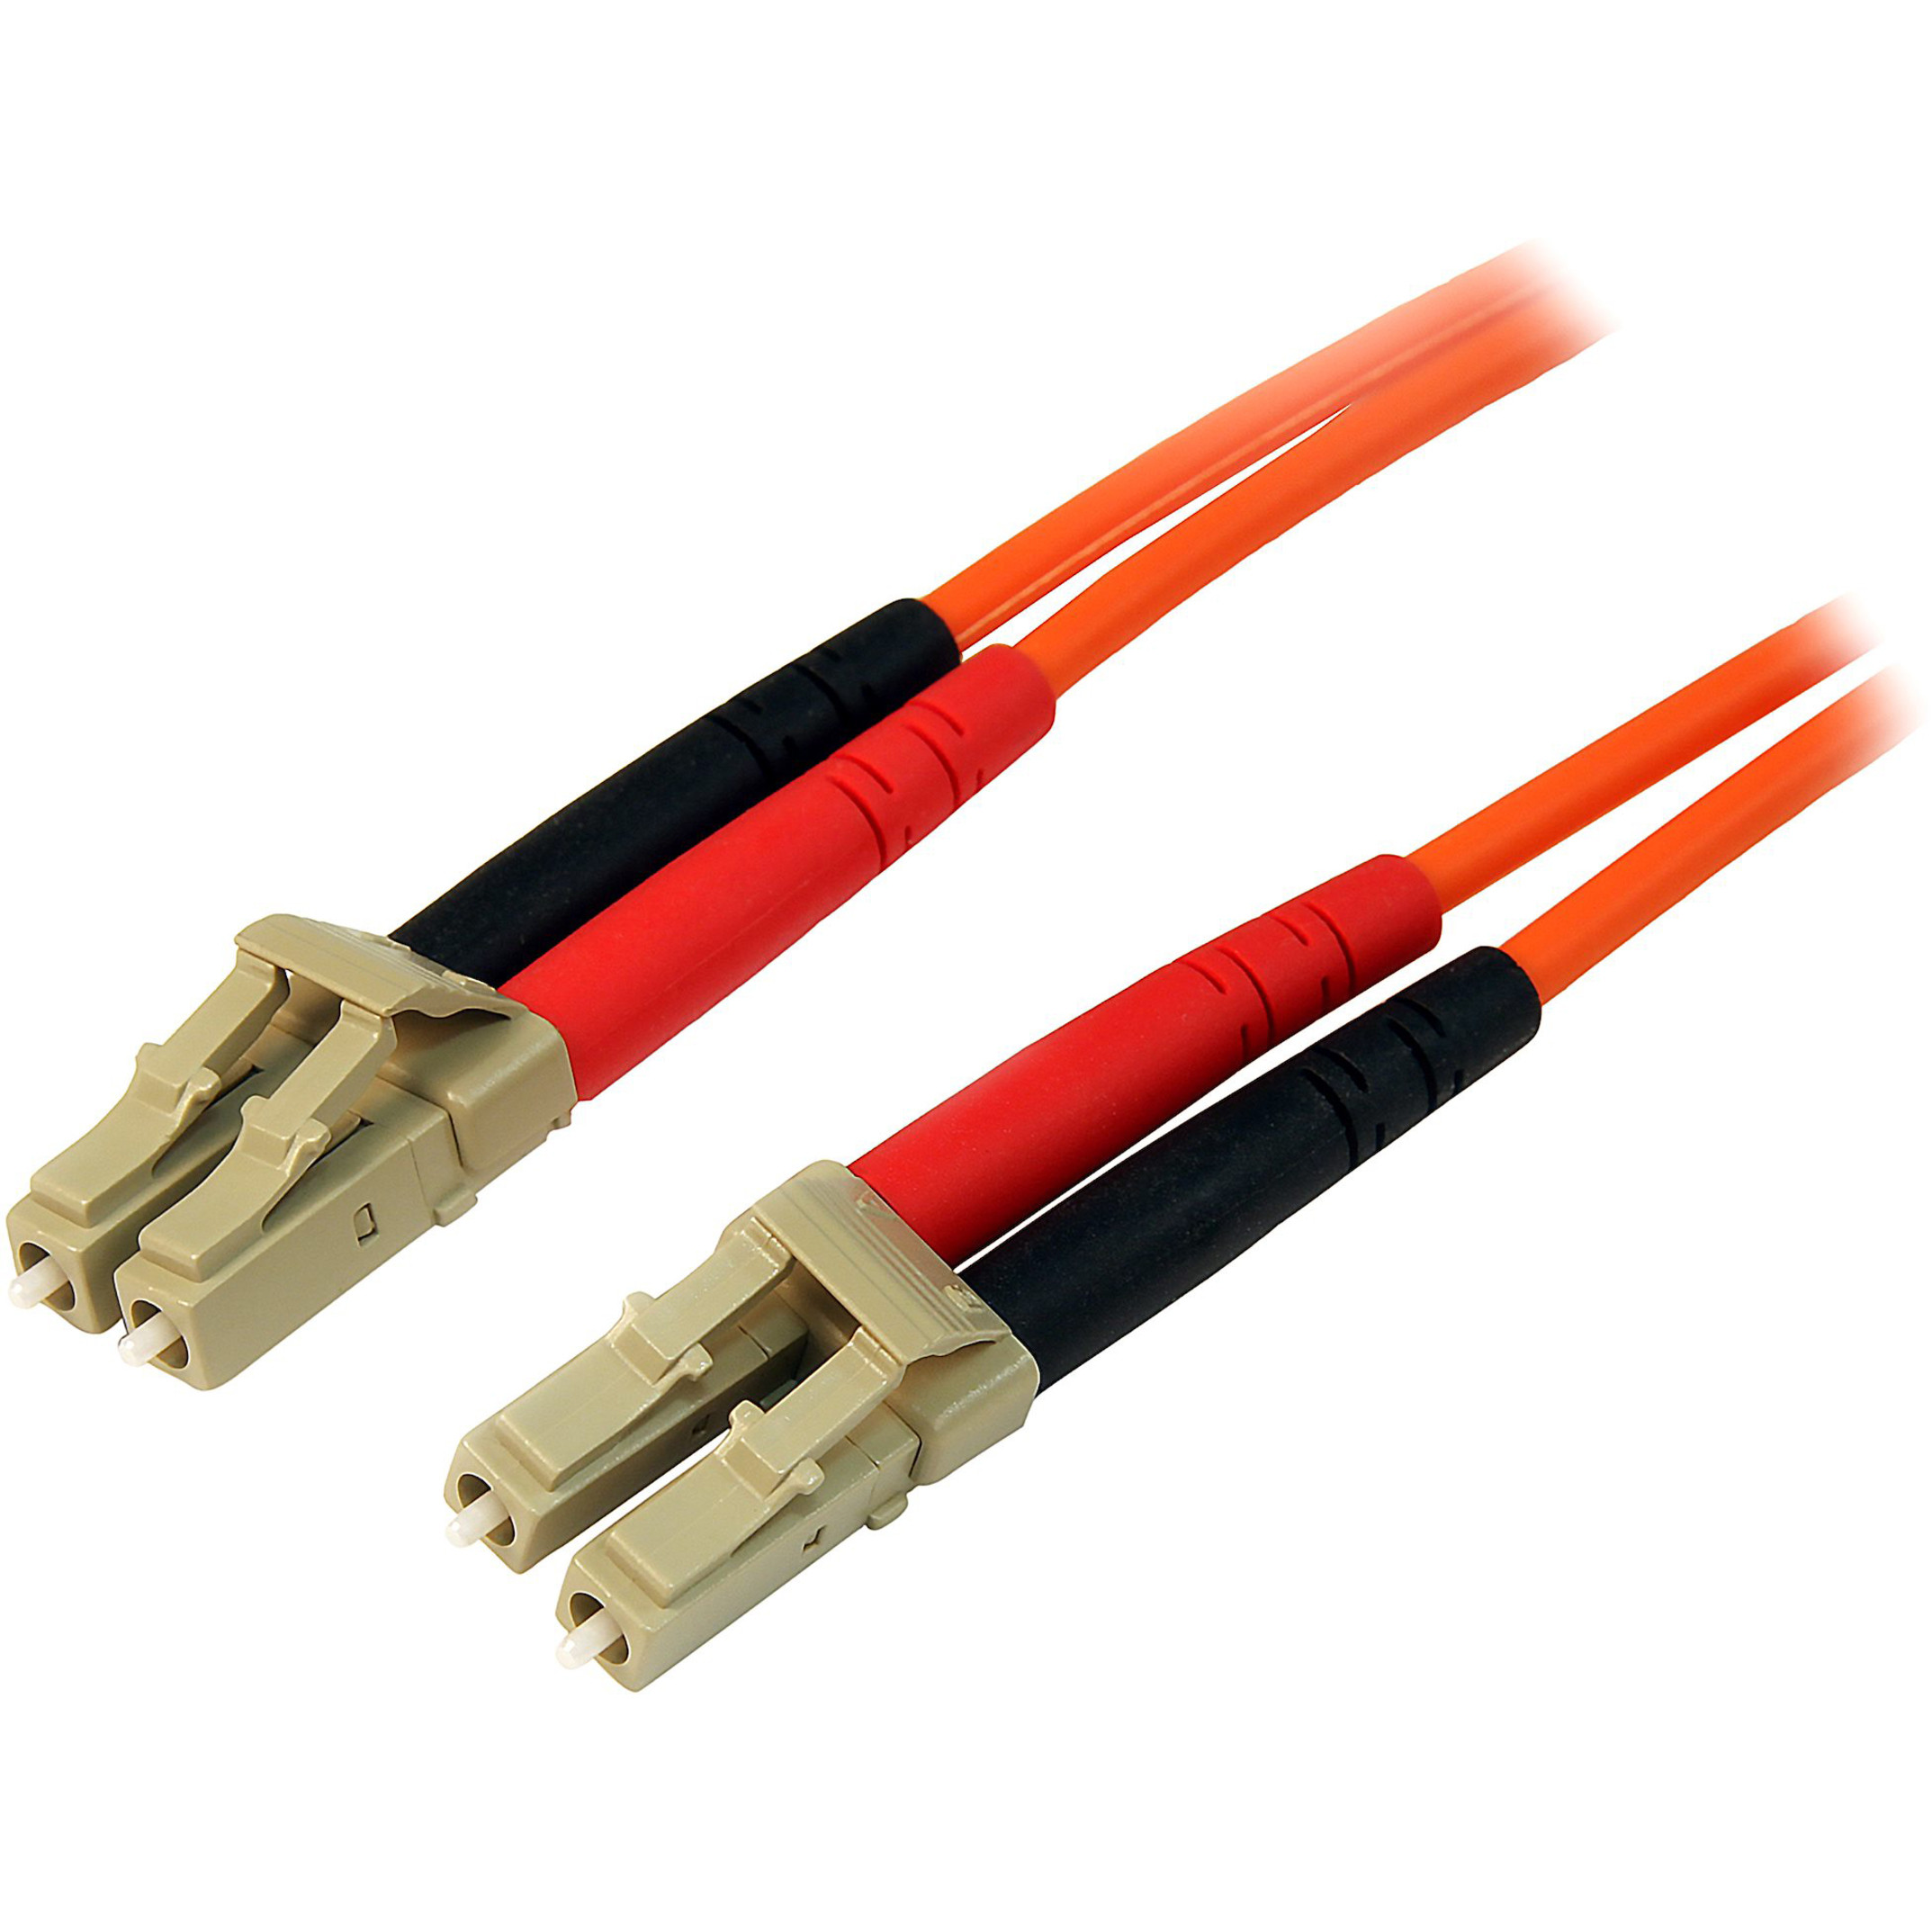 Startech .com 2m Fiber Optic CableMultimode Duplex 50/125LSZHLC/LCOM2LC to LC Fiber Patch CableConnect fiber network devices… 50FIBLCLC2